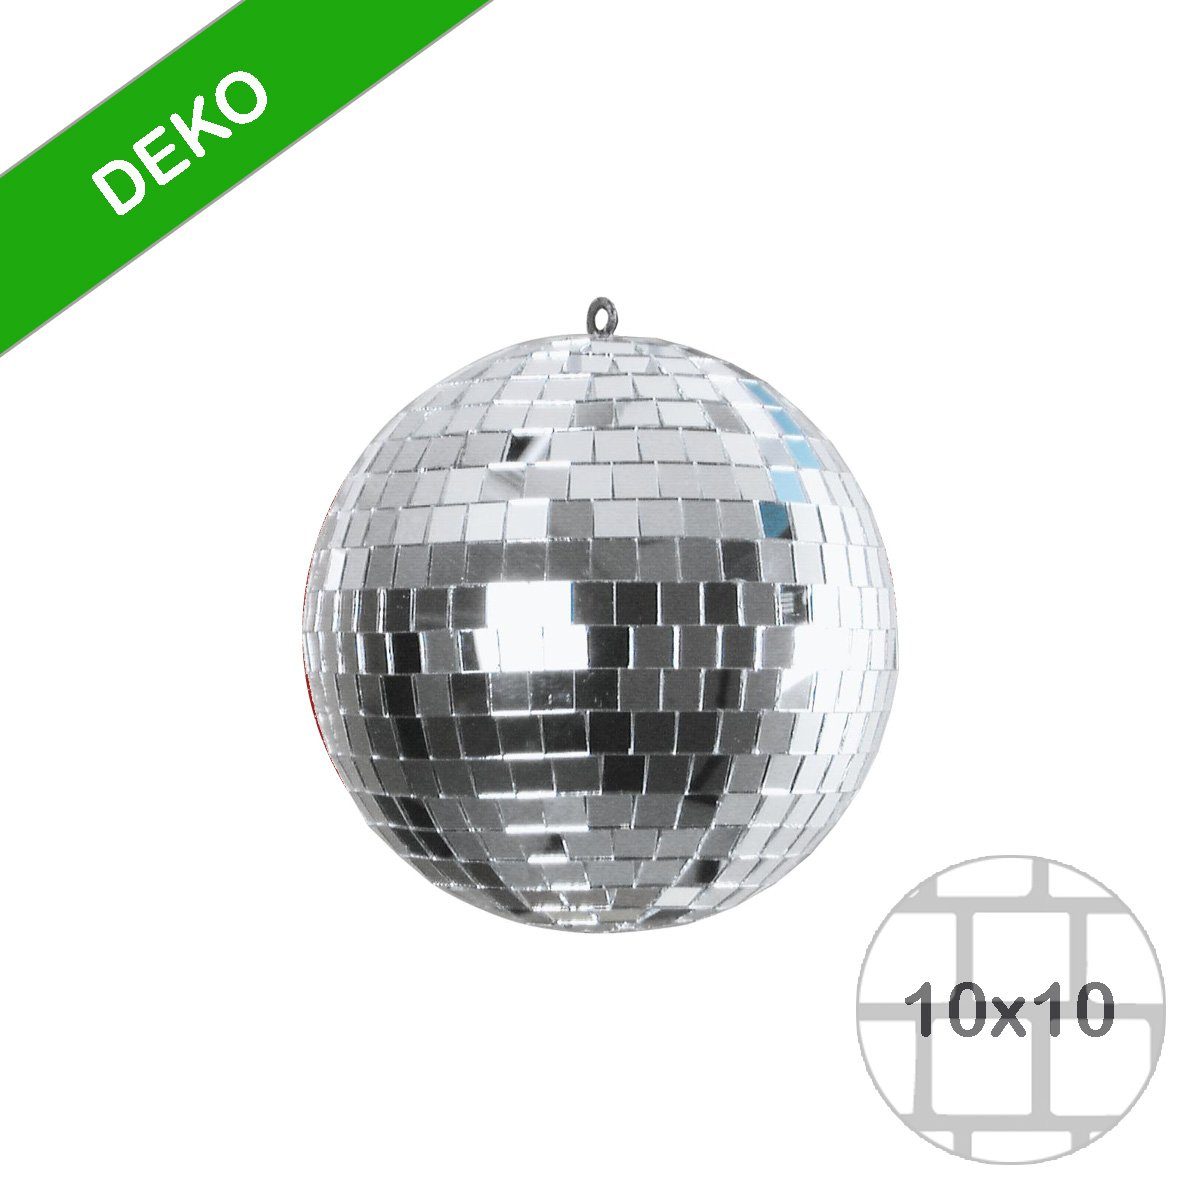 SATISFIRE Discolicht Spiegelkugel 15cm silber Discokugel Mirrorball Party Disko Deko